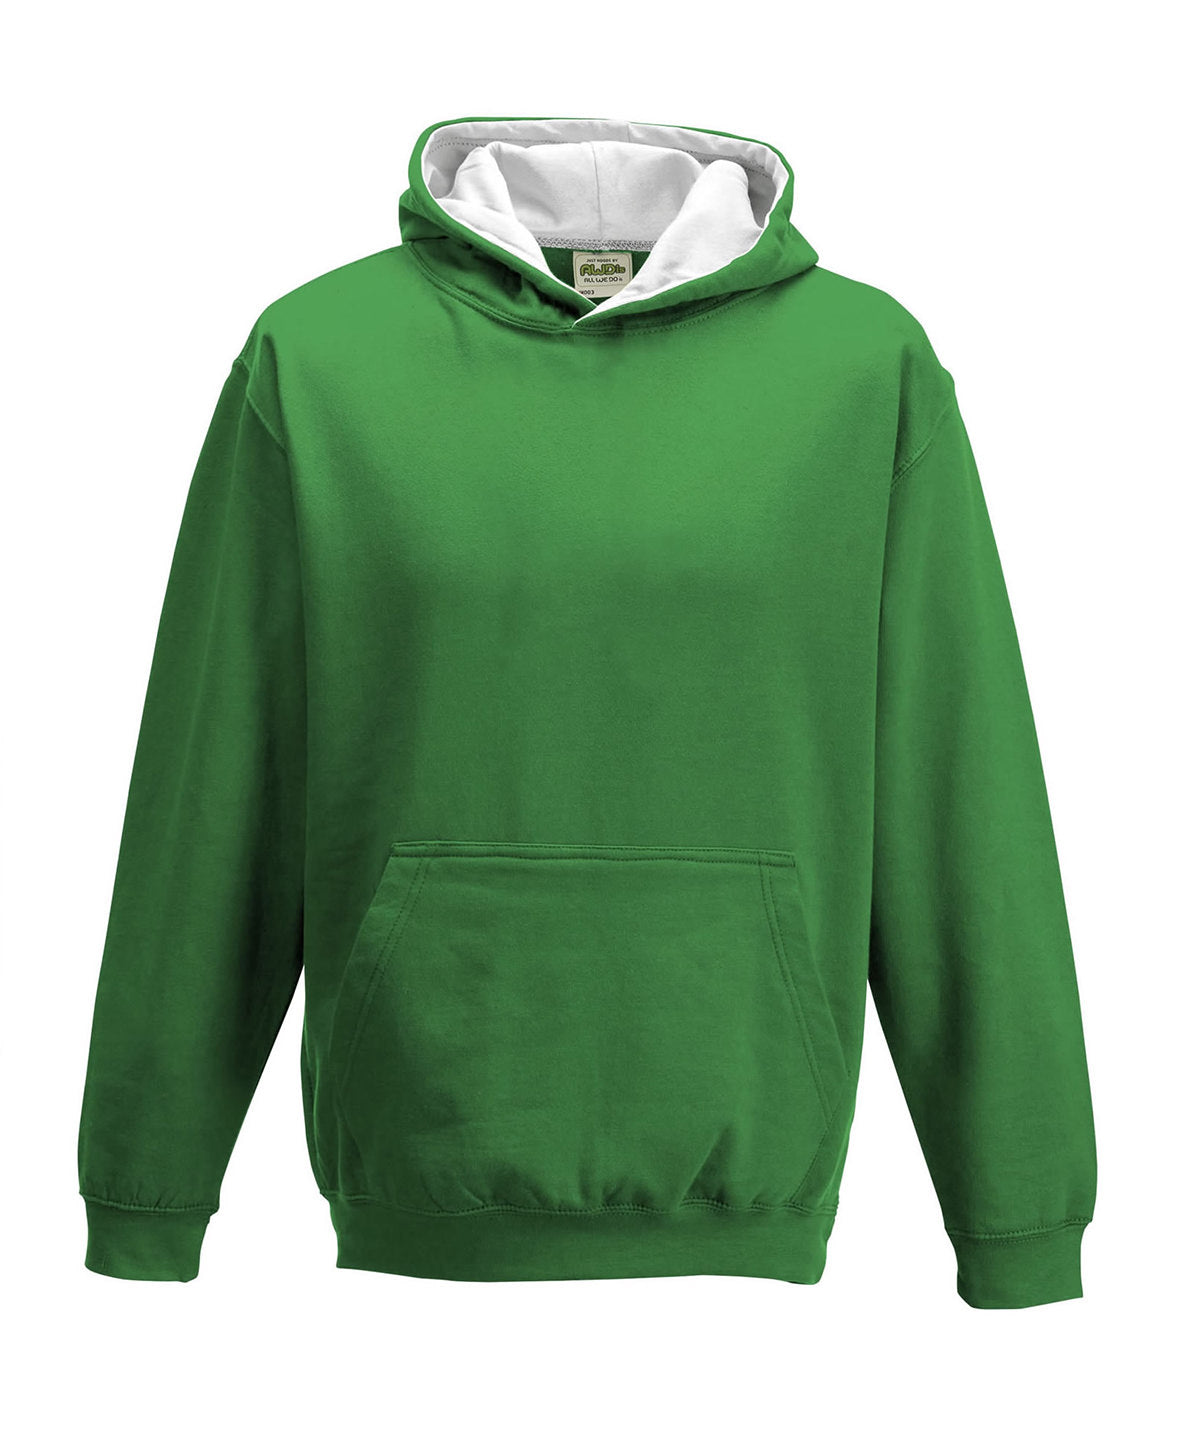 Personalised Hoodies - Dark Green AWDis Just Hoods Kids varsity hoodie